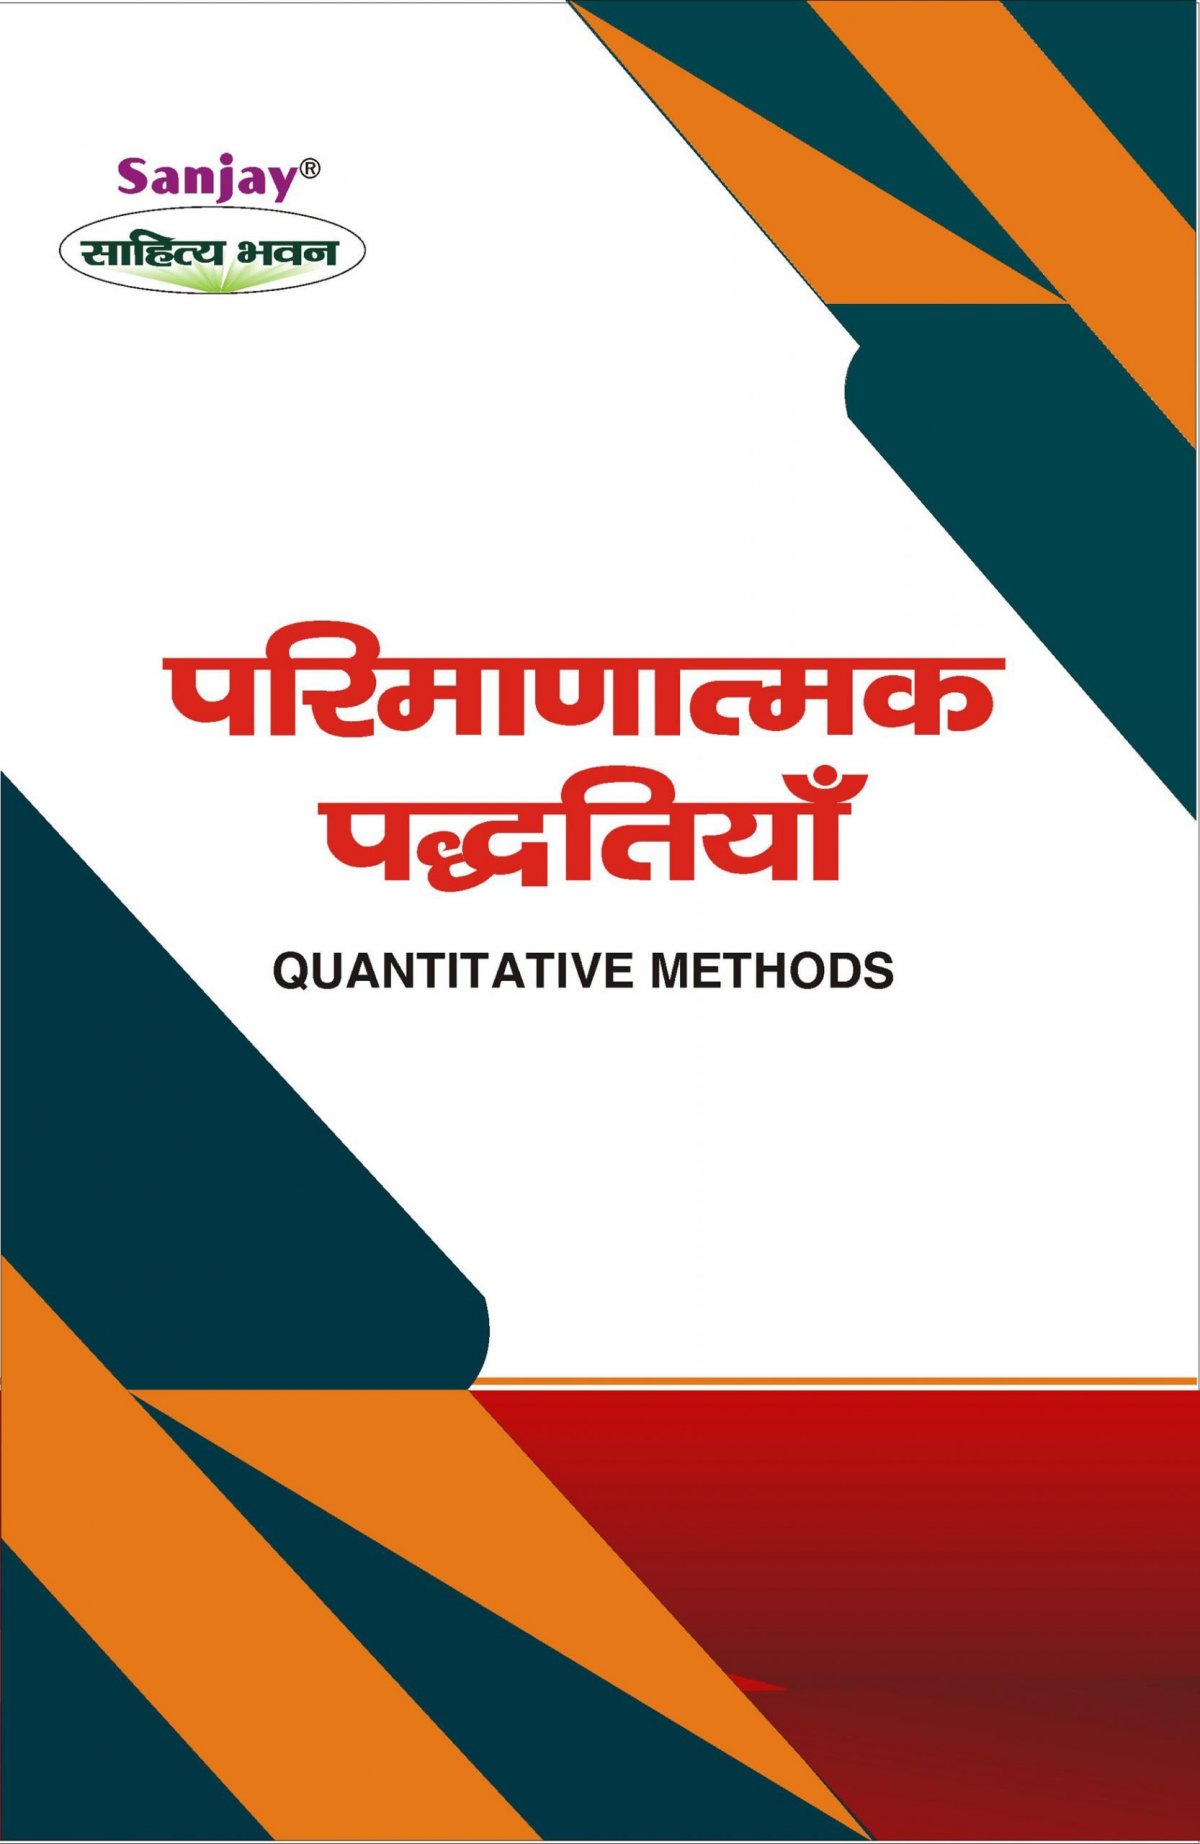 Quantitative Methods (परिमाणात्मक पद्धतियाँ) - Mahatma Gandhi Kashi Vidyapith, Varanasi